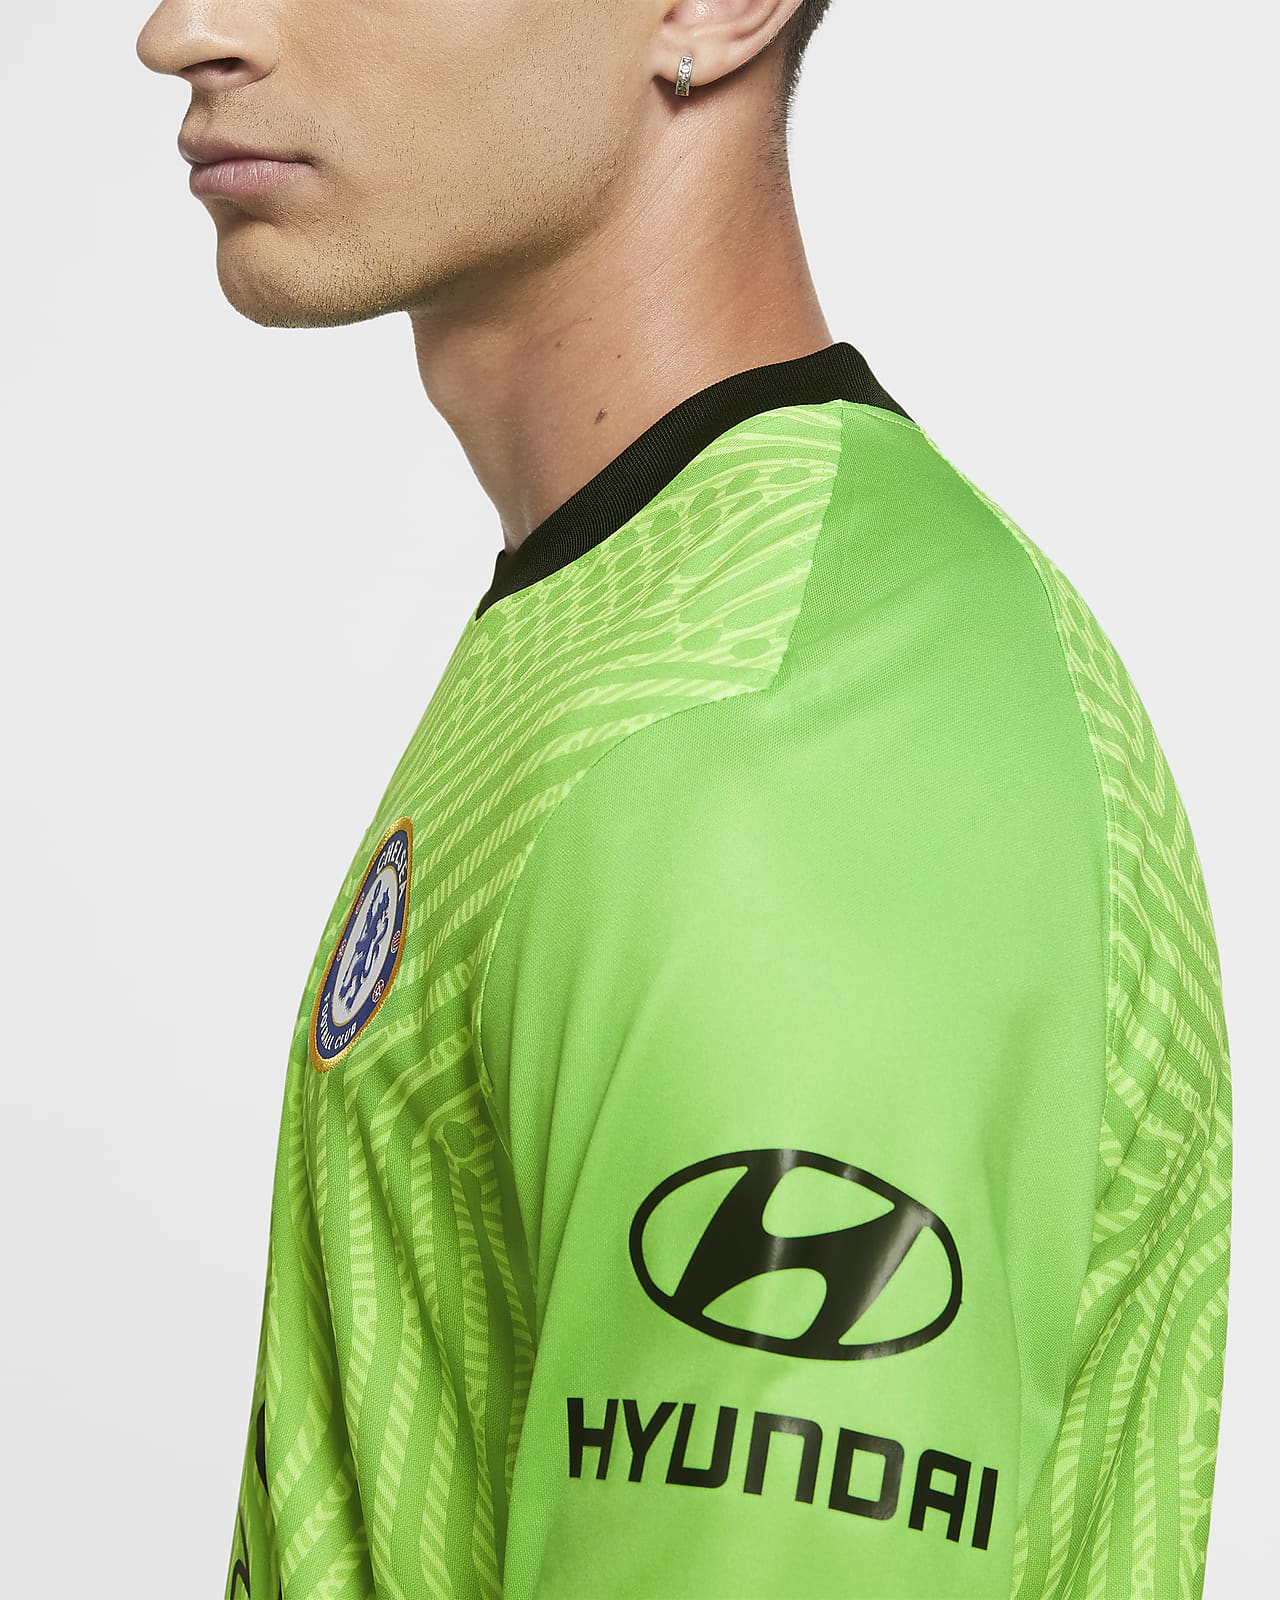 chelsea fc goalkeeper kit